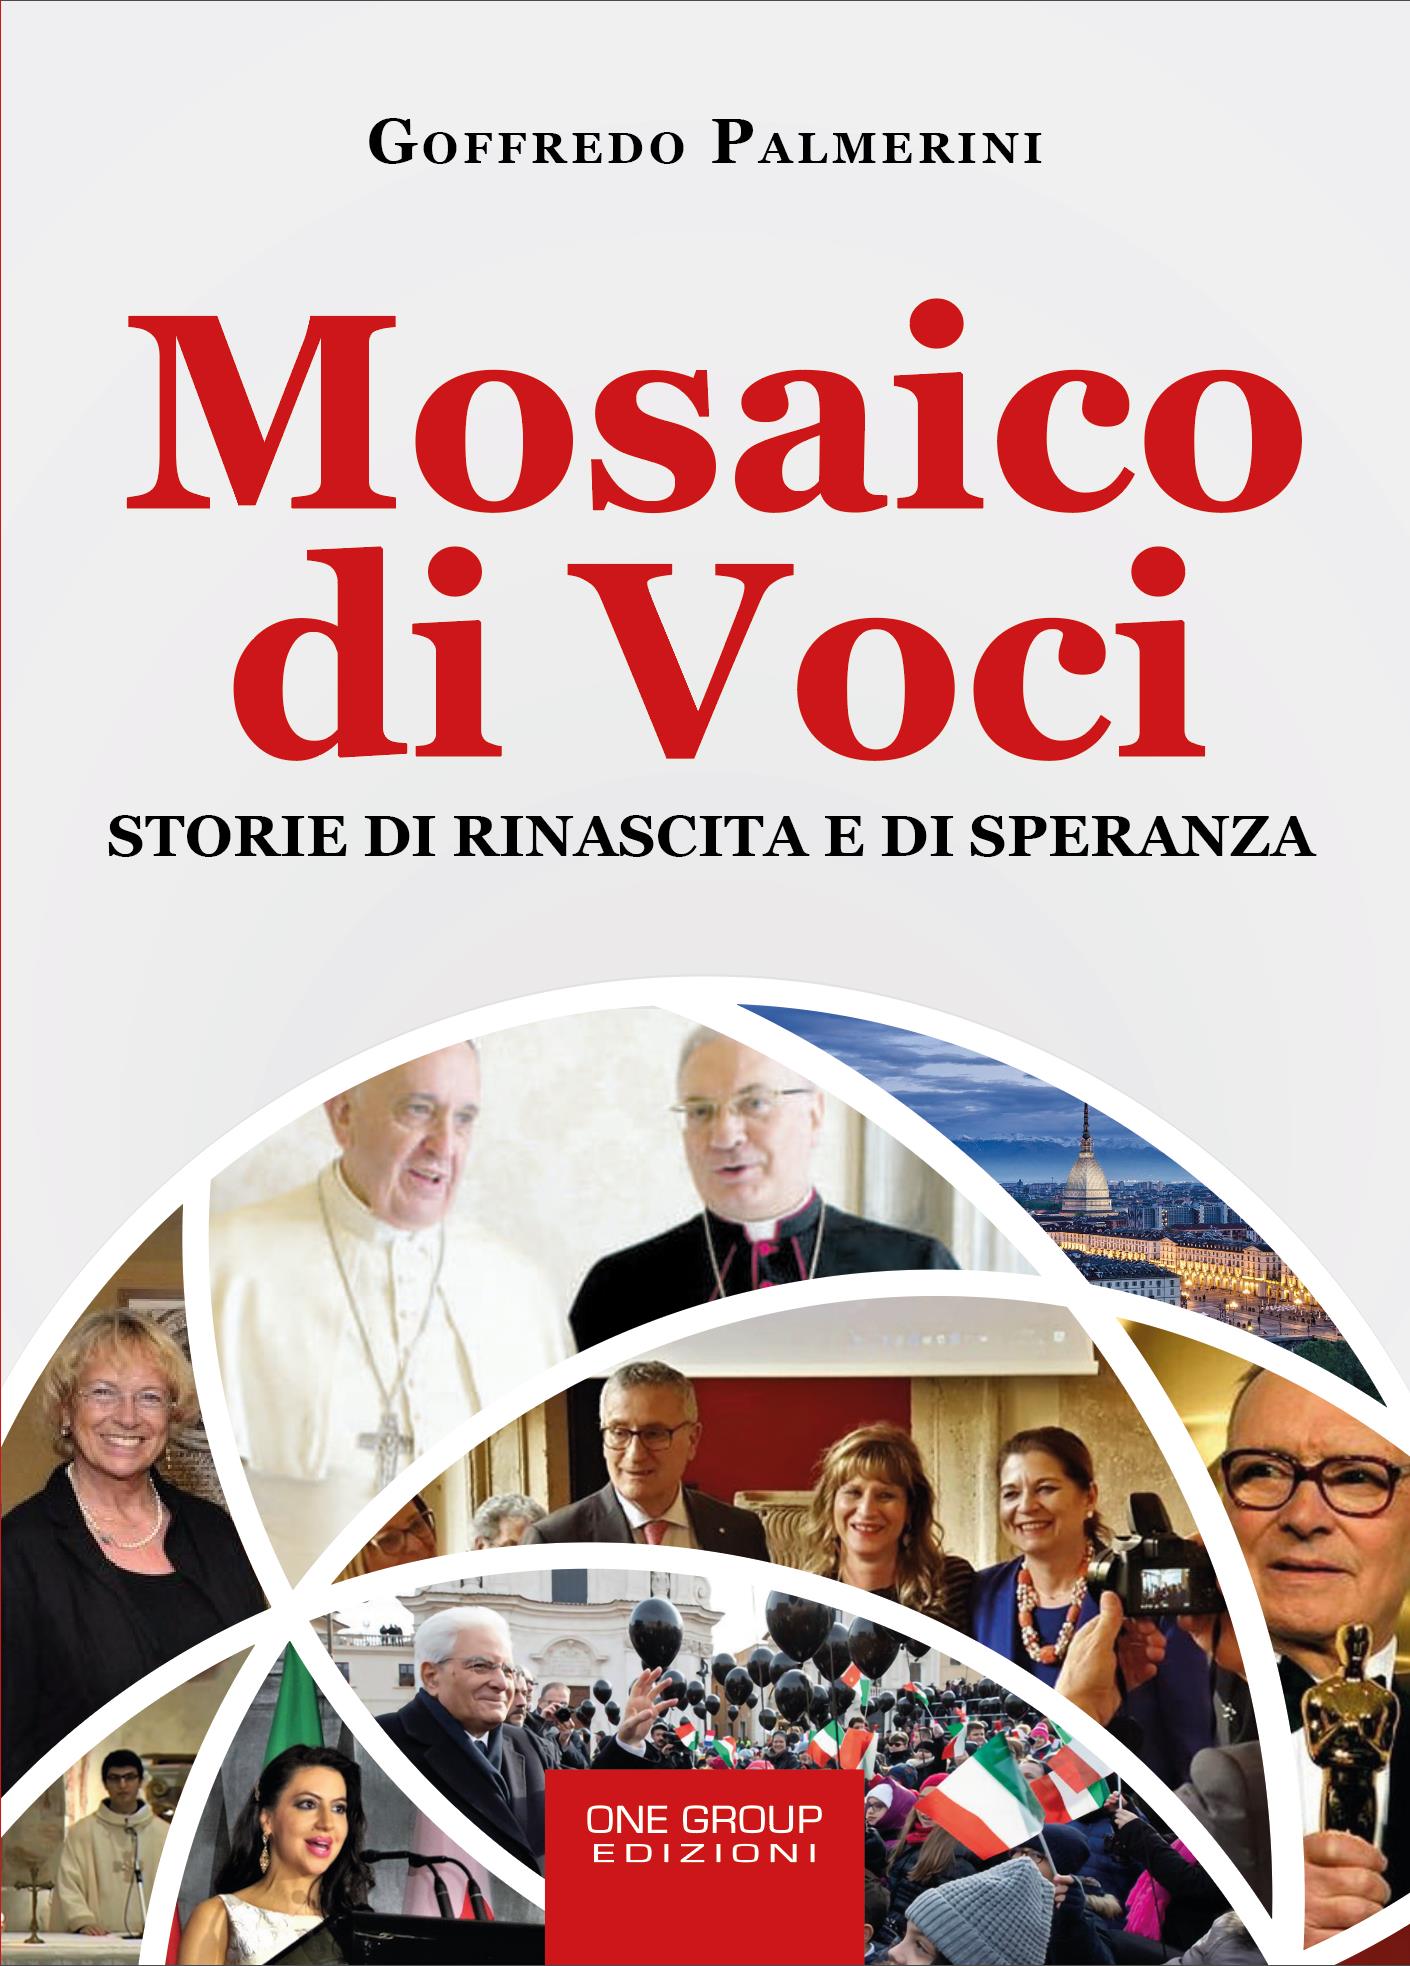 Libri&Editoria. “Mosaico di Voci”, il nuovo libro di Goffredo Palmerini: recensione  di Franco Presicci, già Giornalista de “Il Giorno”